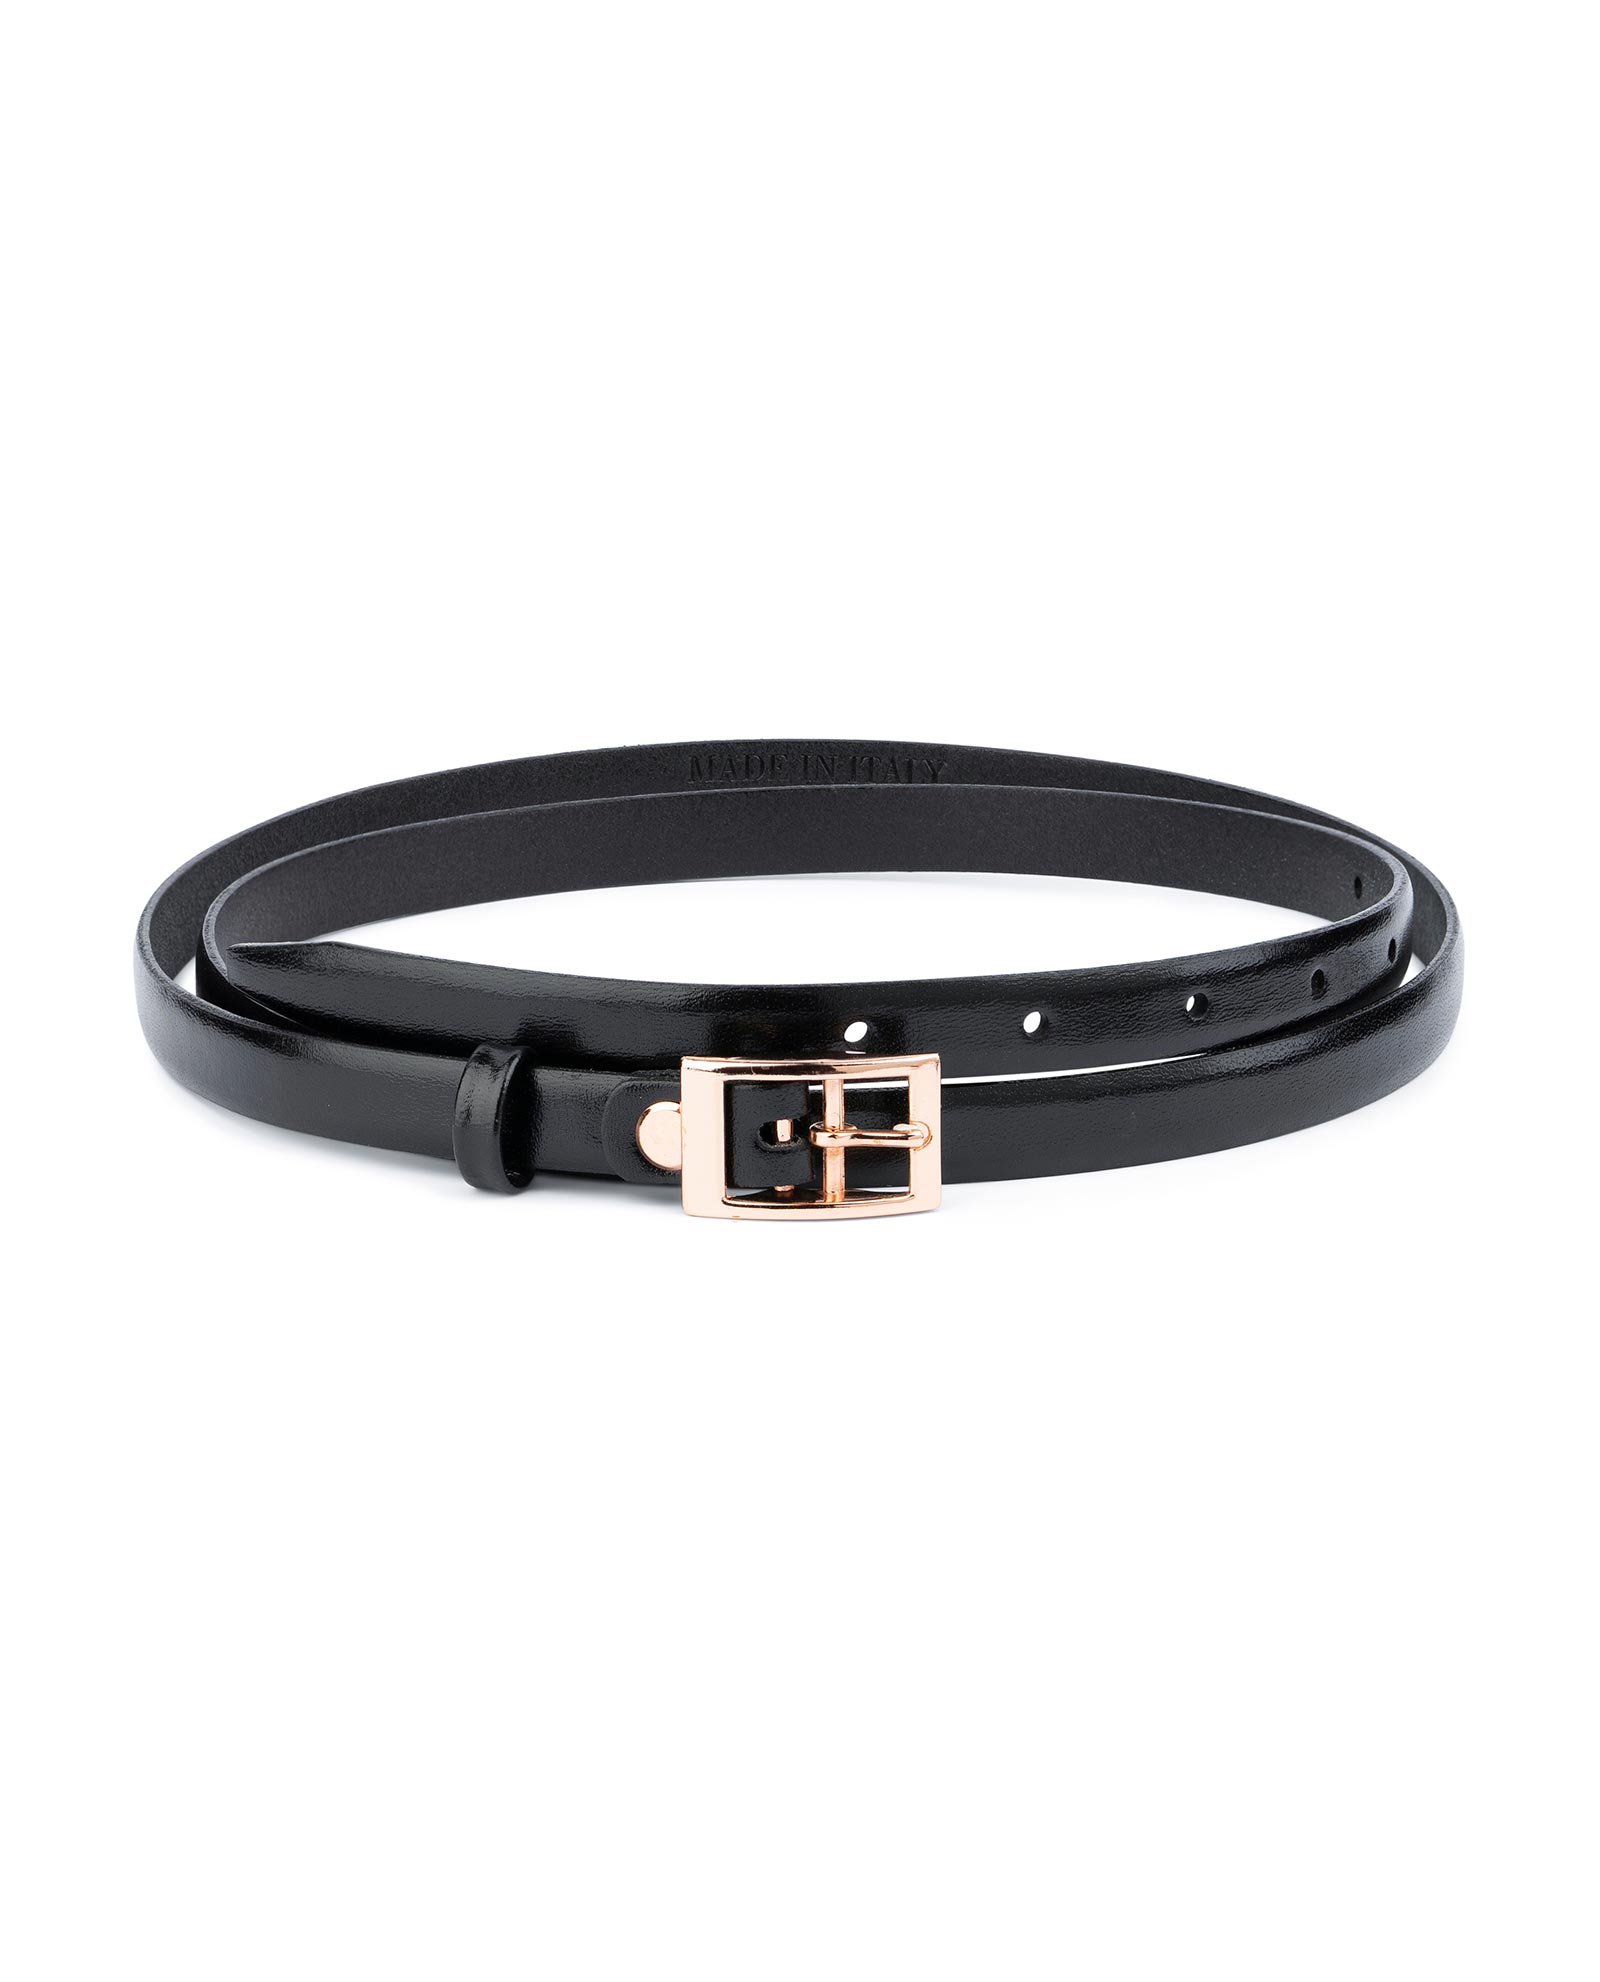 Buy Belt With Rose Gold Buckle 15 mm | LeatherBeltsOnline.com